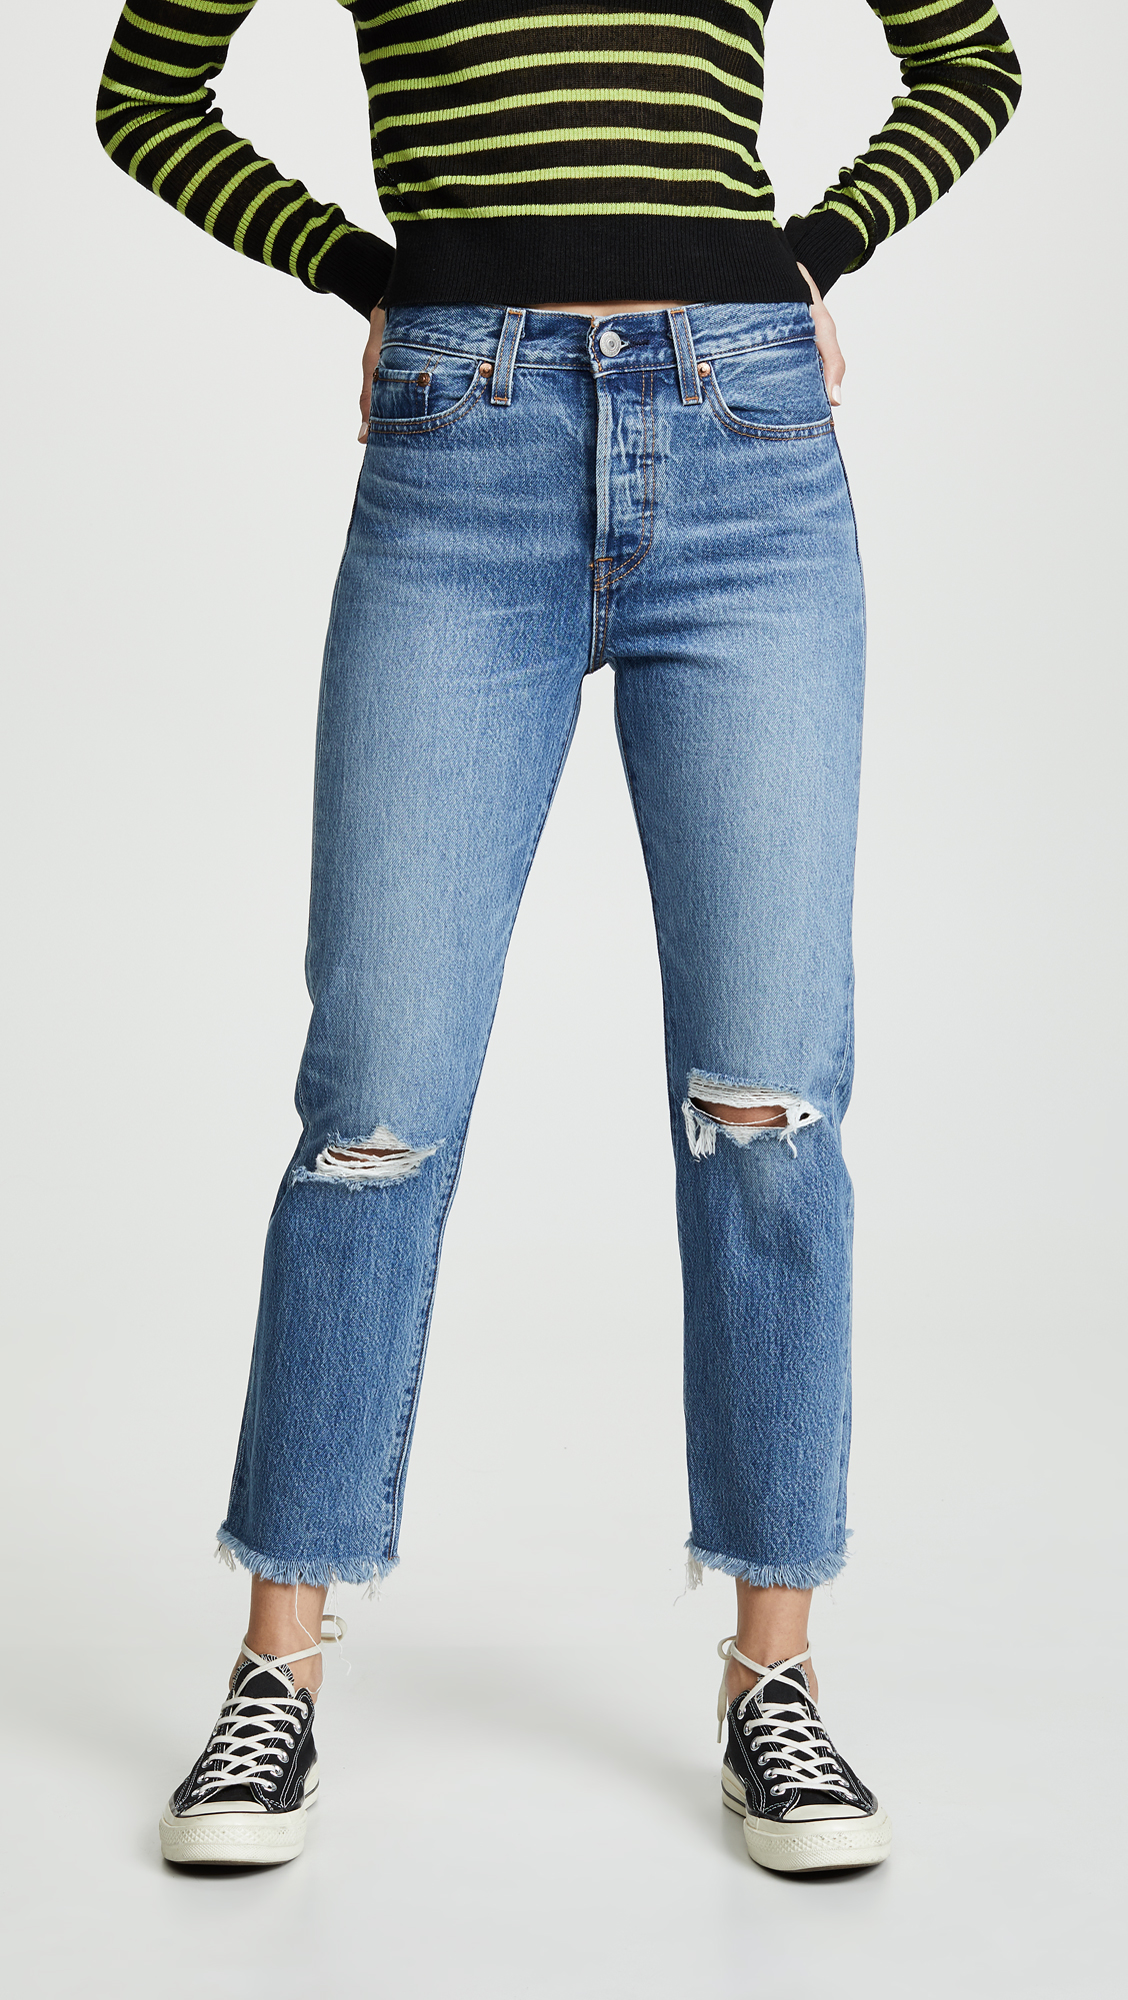 levis-jeans-shopbop.jpg